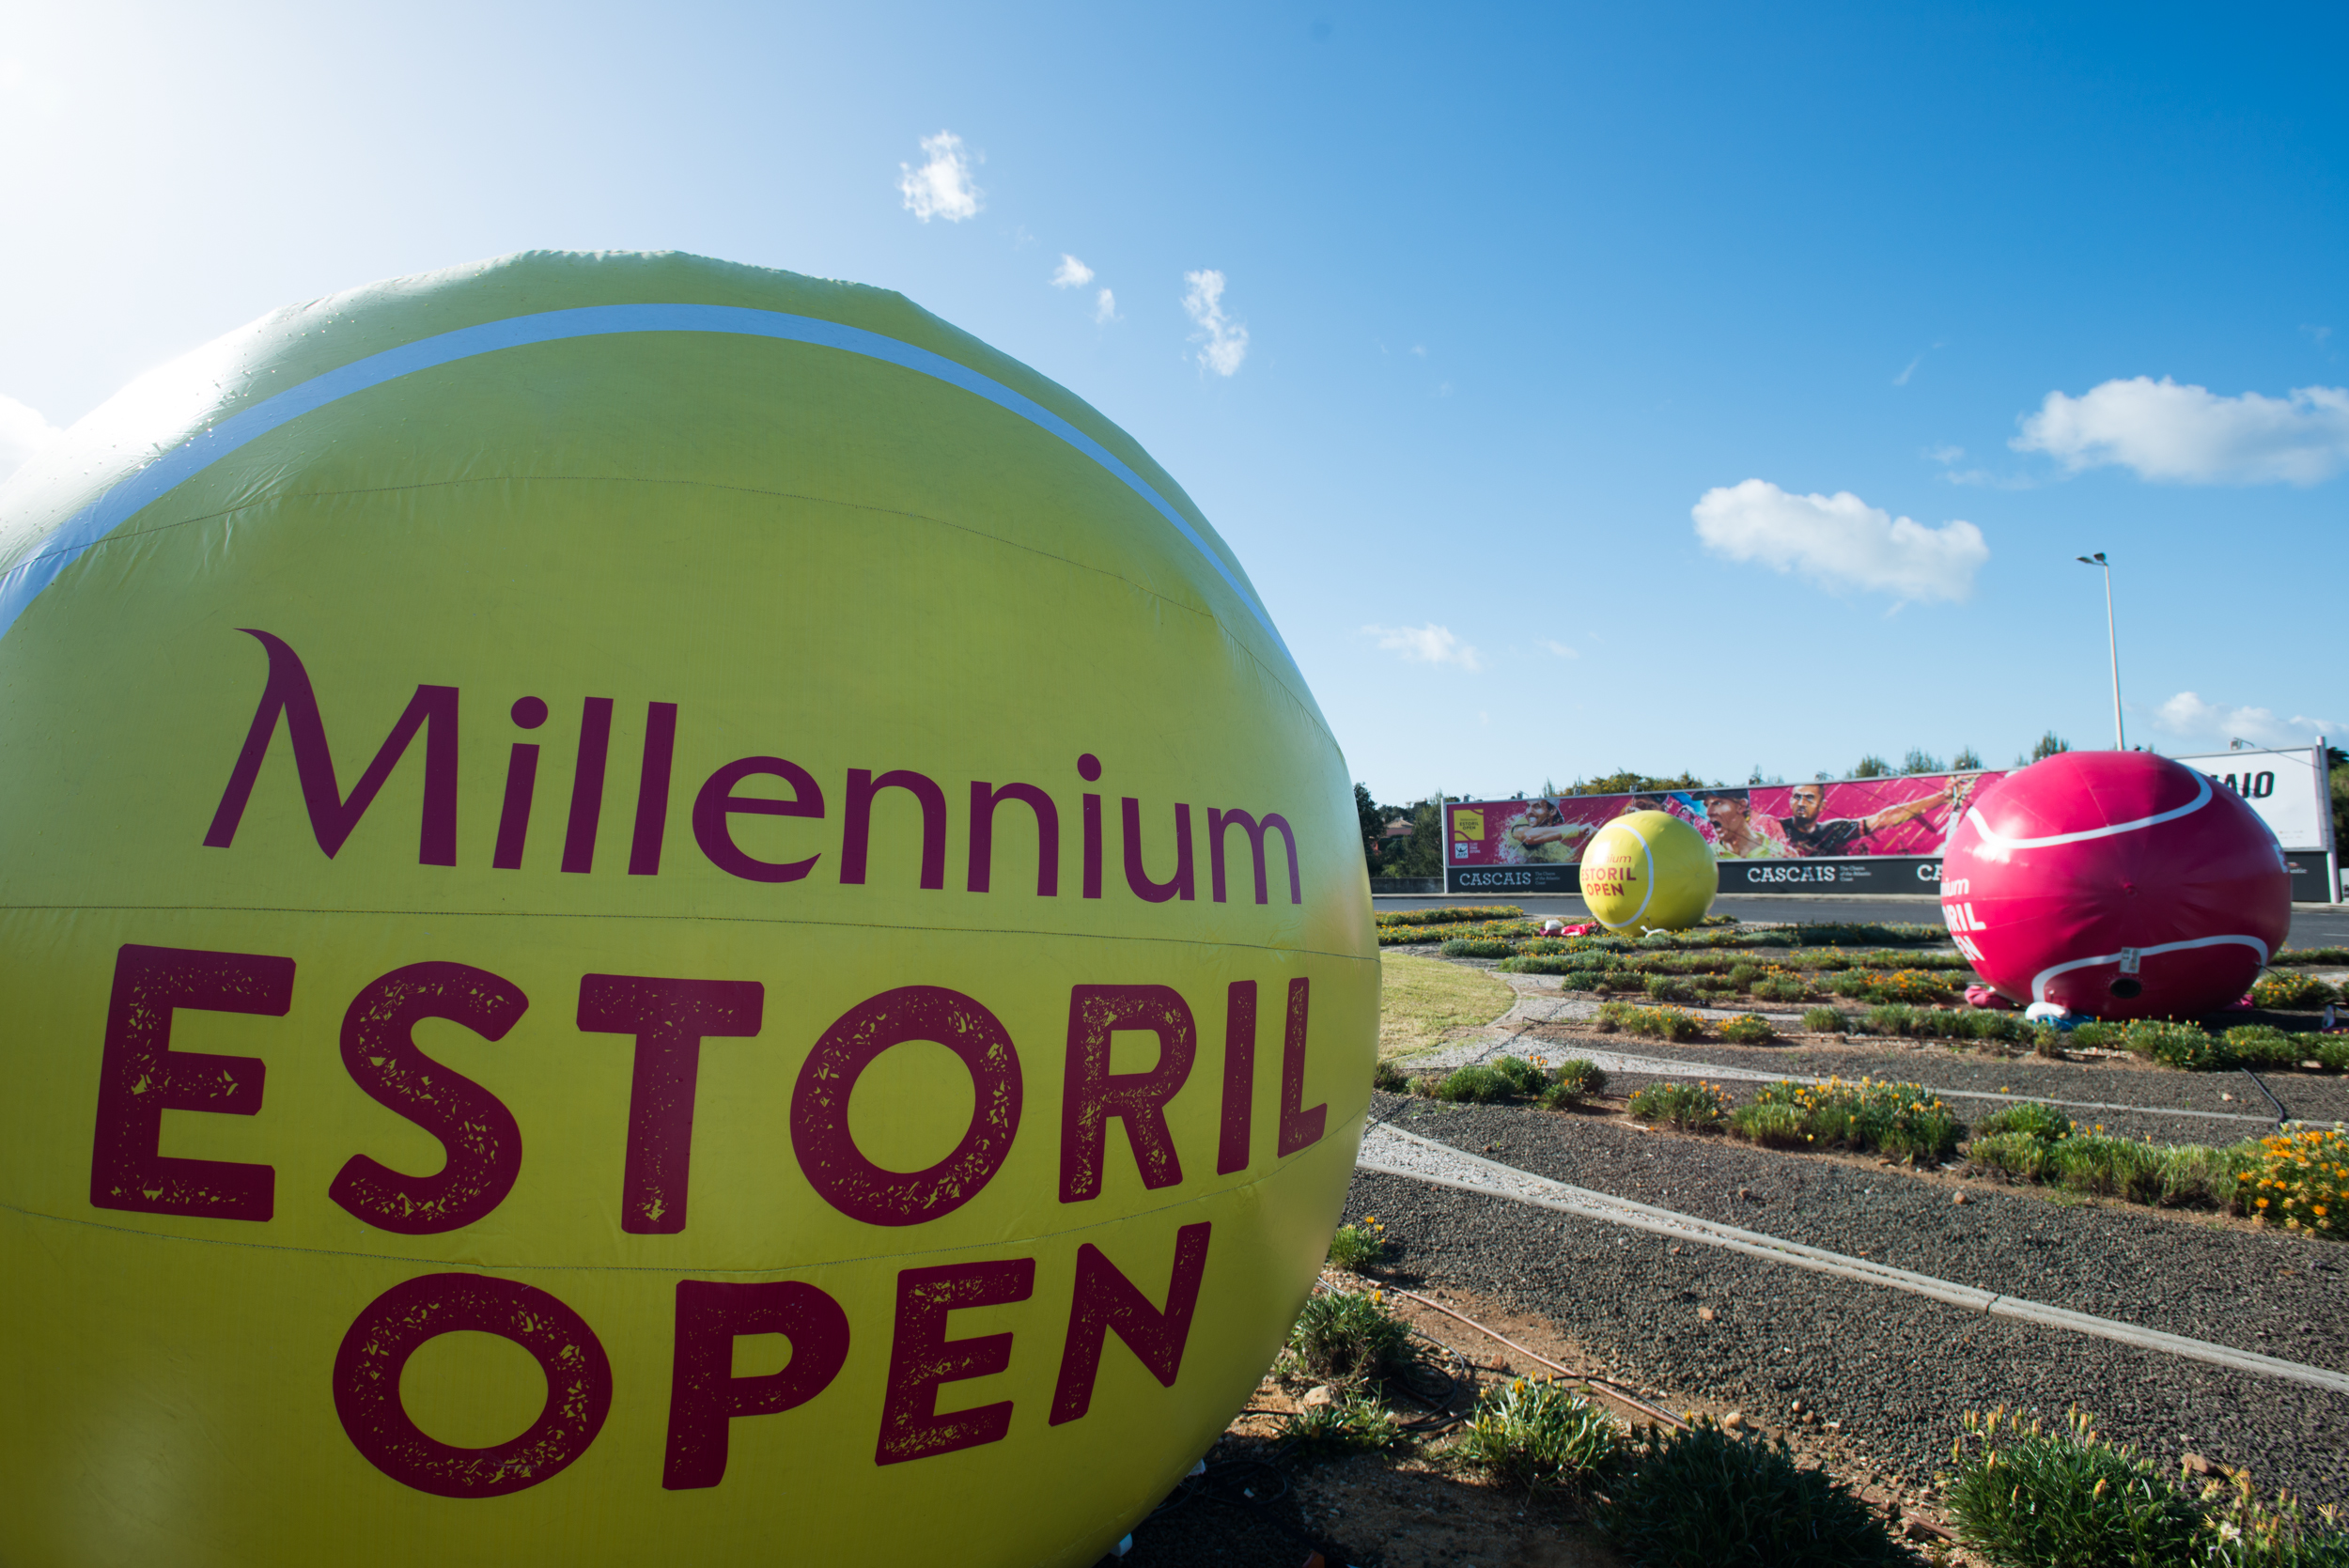 Millennium Estoril Open Rotunda